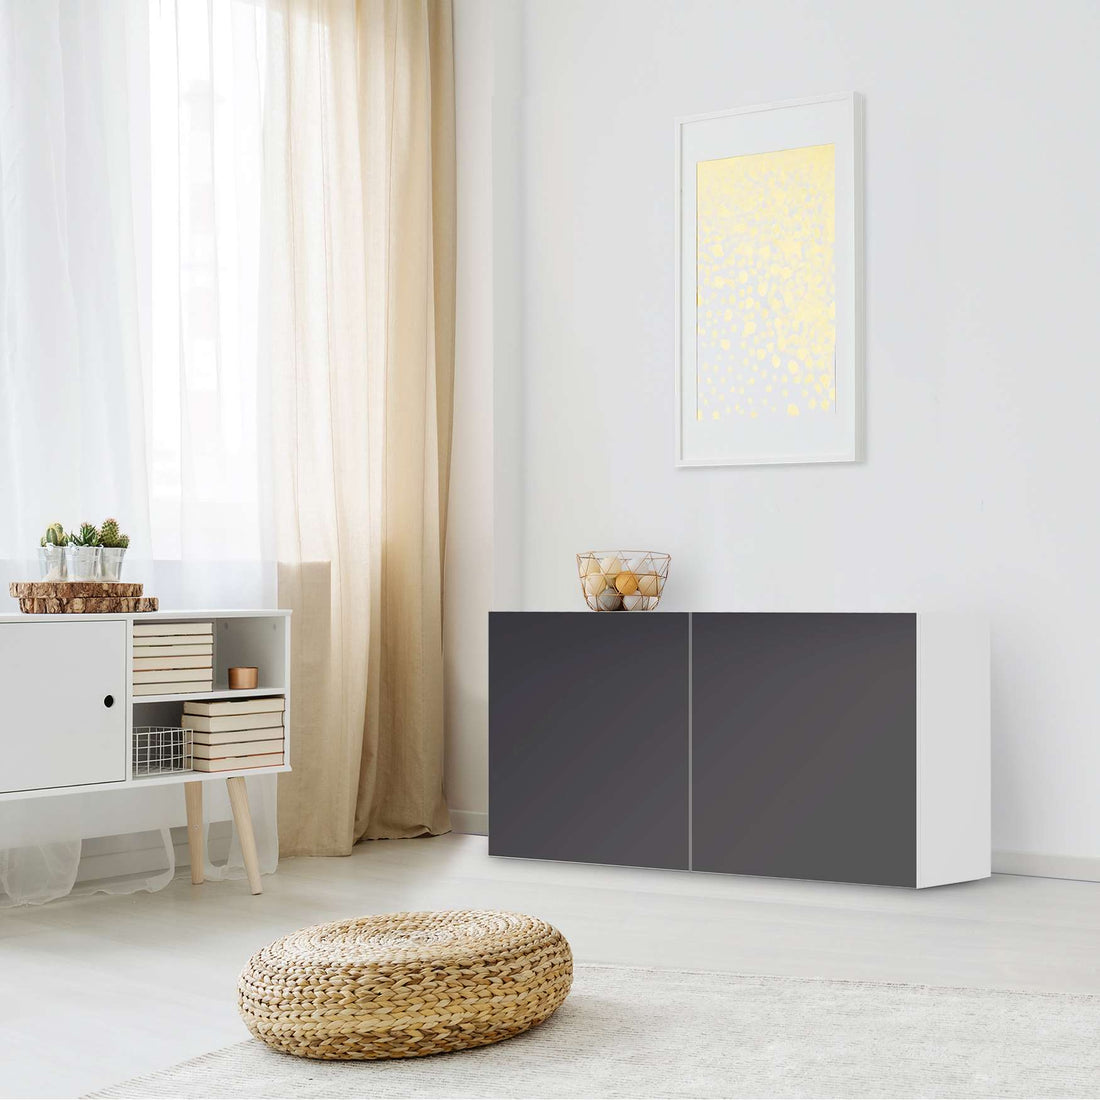 Folie für Möbel Grau Dark - IKEA Besta Regal Quer 2 Türen - Wohnzimmer